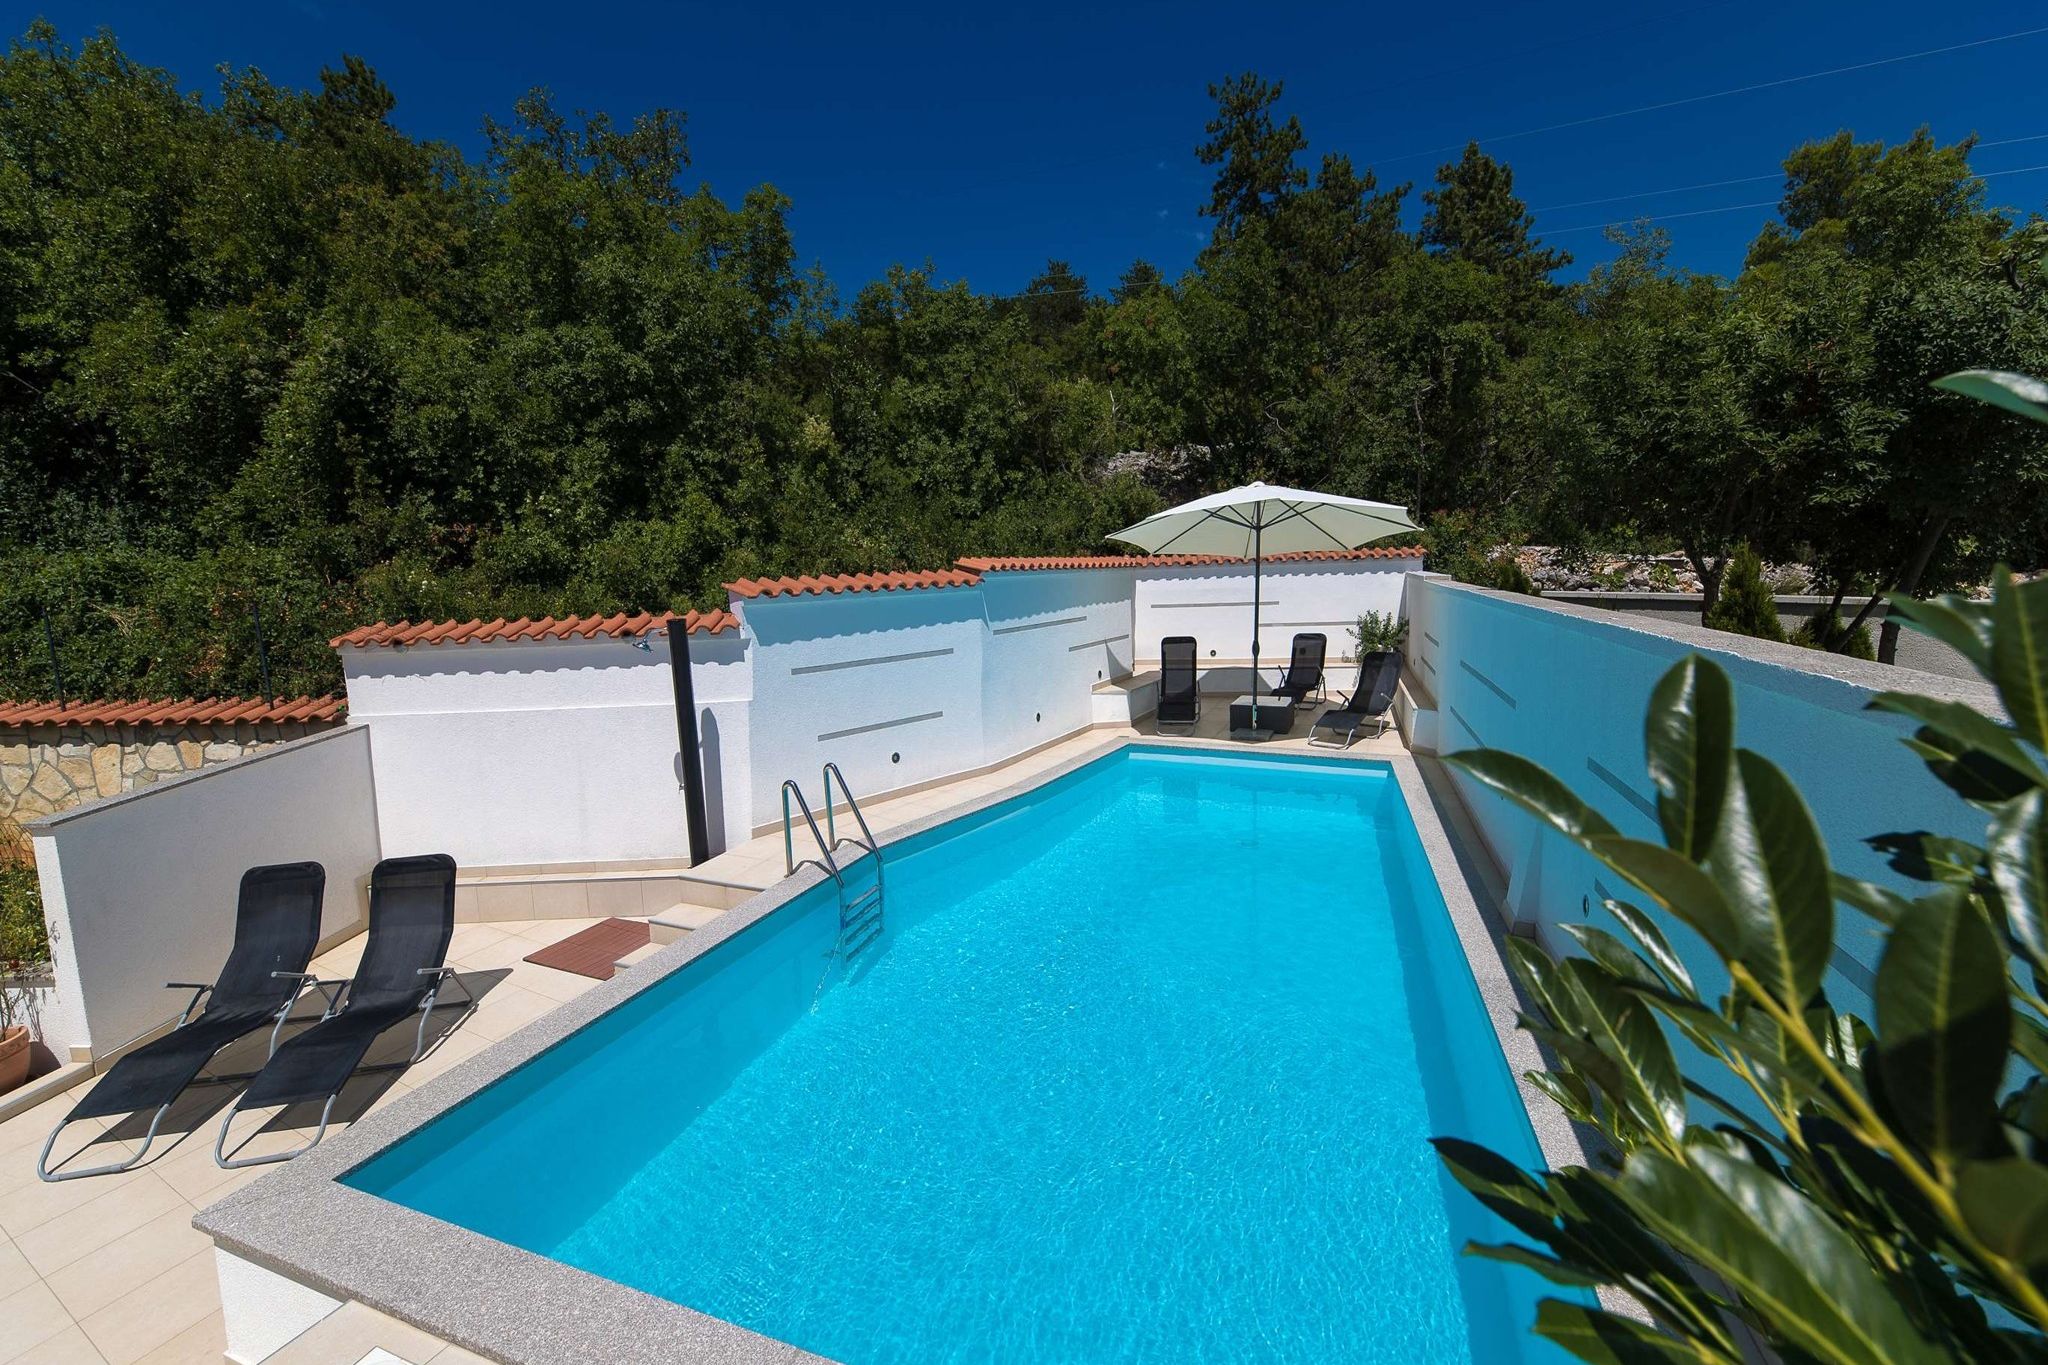 Mooi huis met privé zwembad, overdekt terras en zomerkeuken!